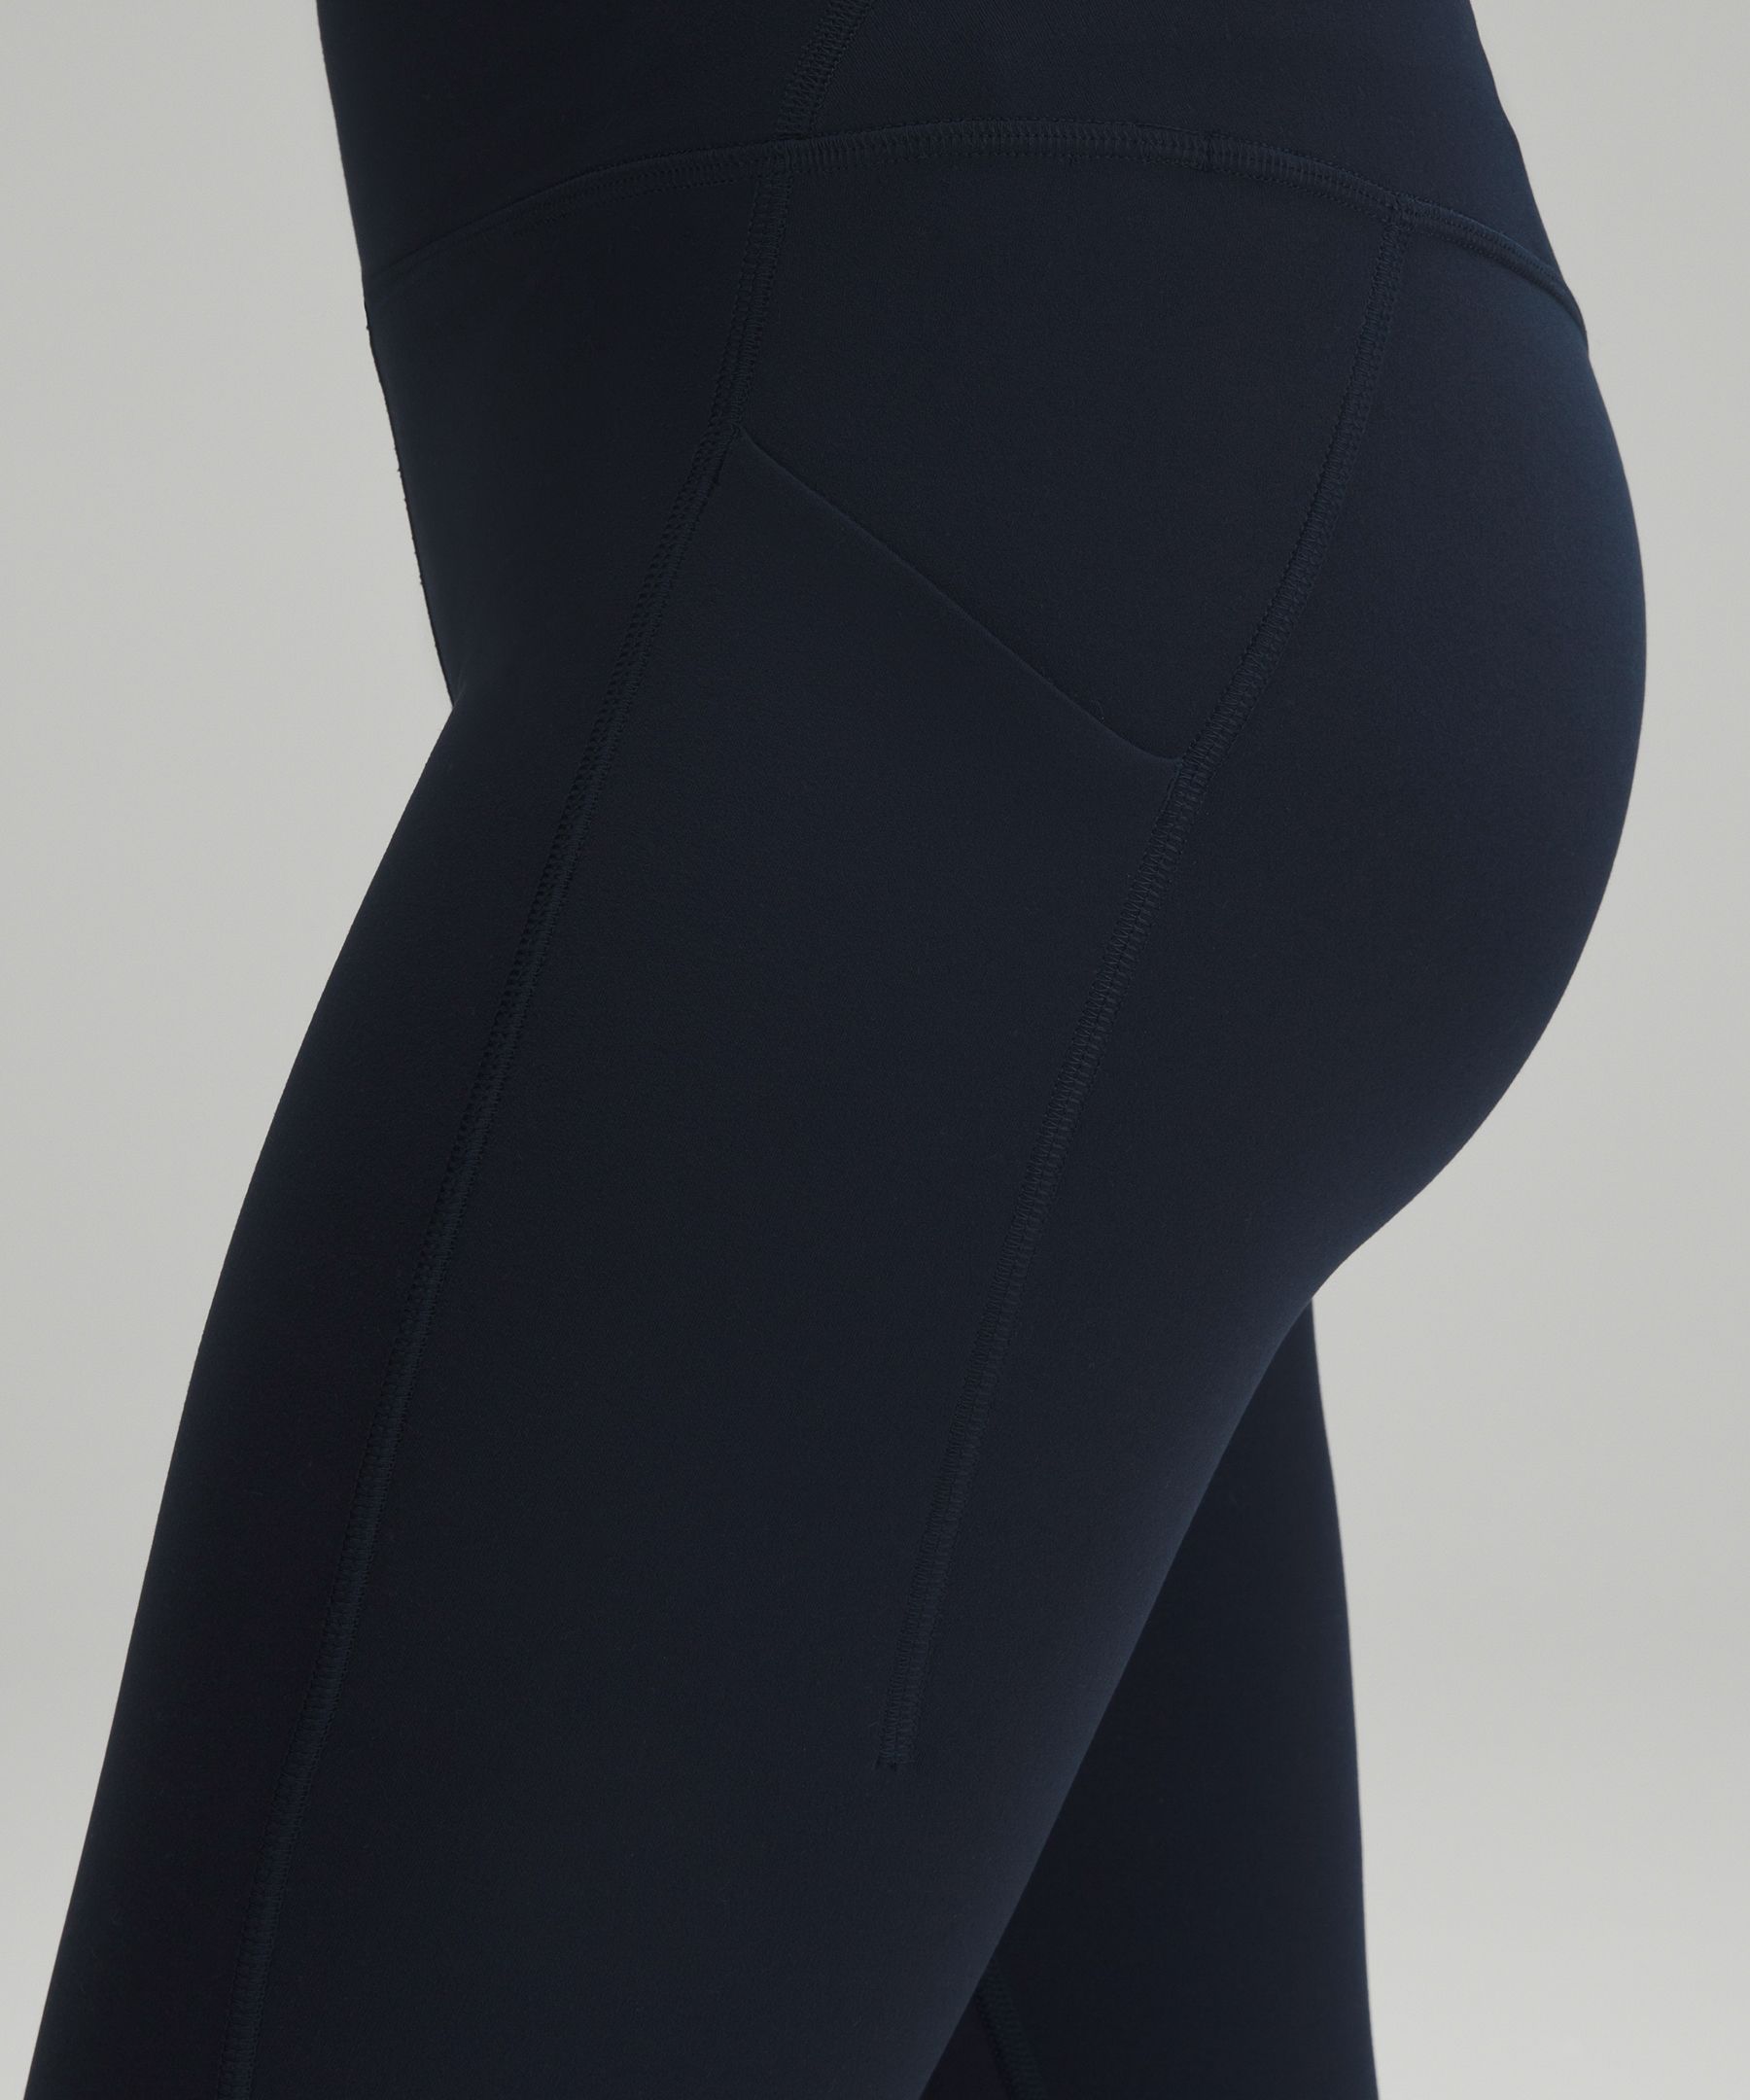 Lululemon Align Full Length Yoga Pants - High-Waisted Design, 28